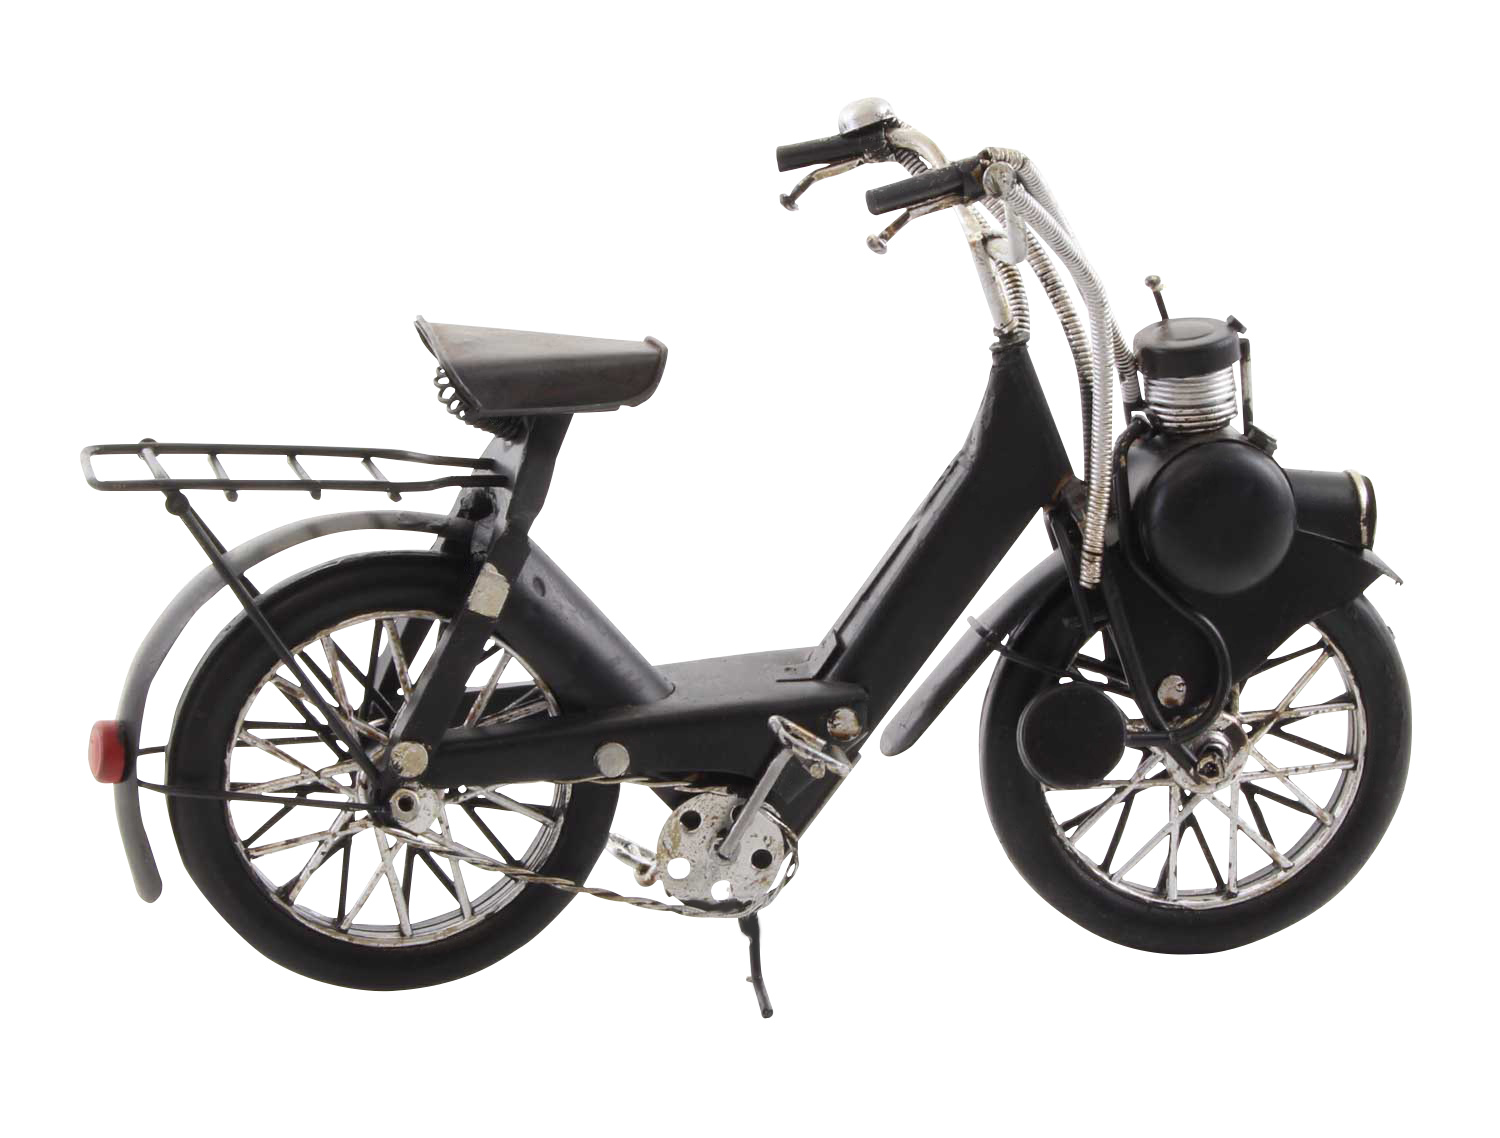 Modell Fahrrad Mofa Mofamodell Moped Nostalgie Blech Metall Antik-Stil ... - BL 243 008